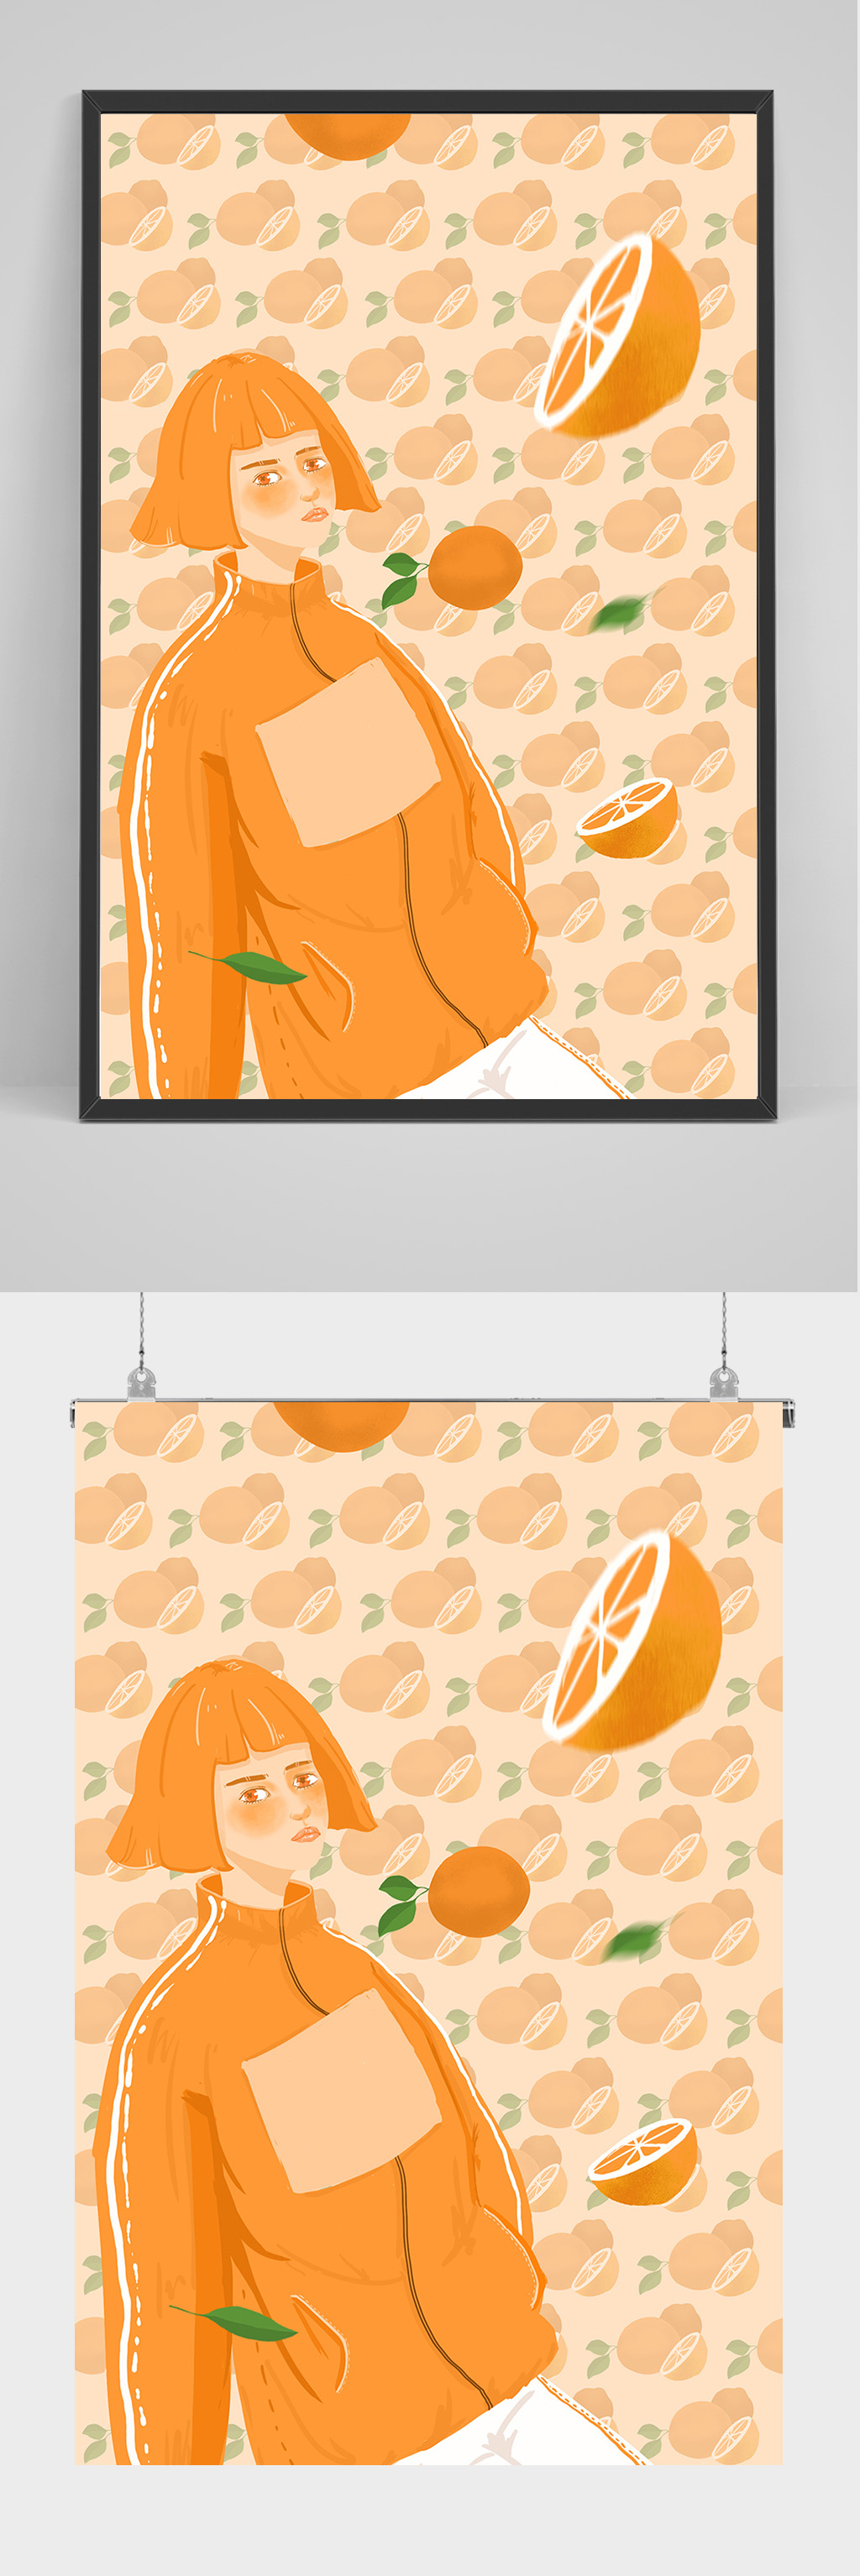 女子吃橘子手绘插画设计